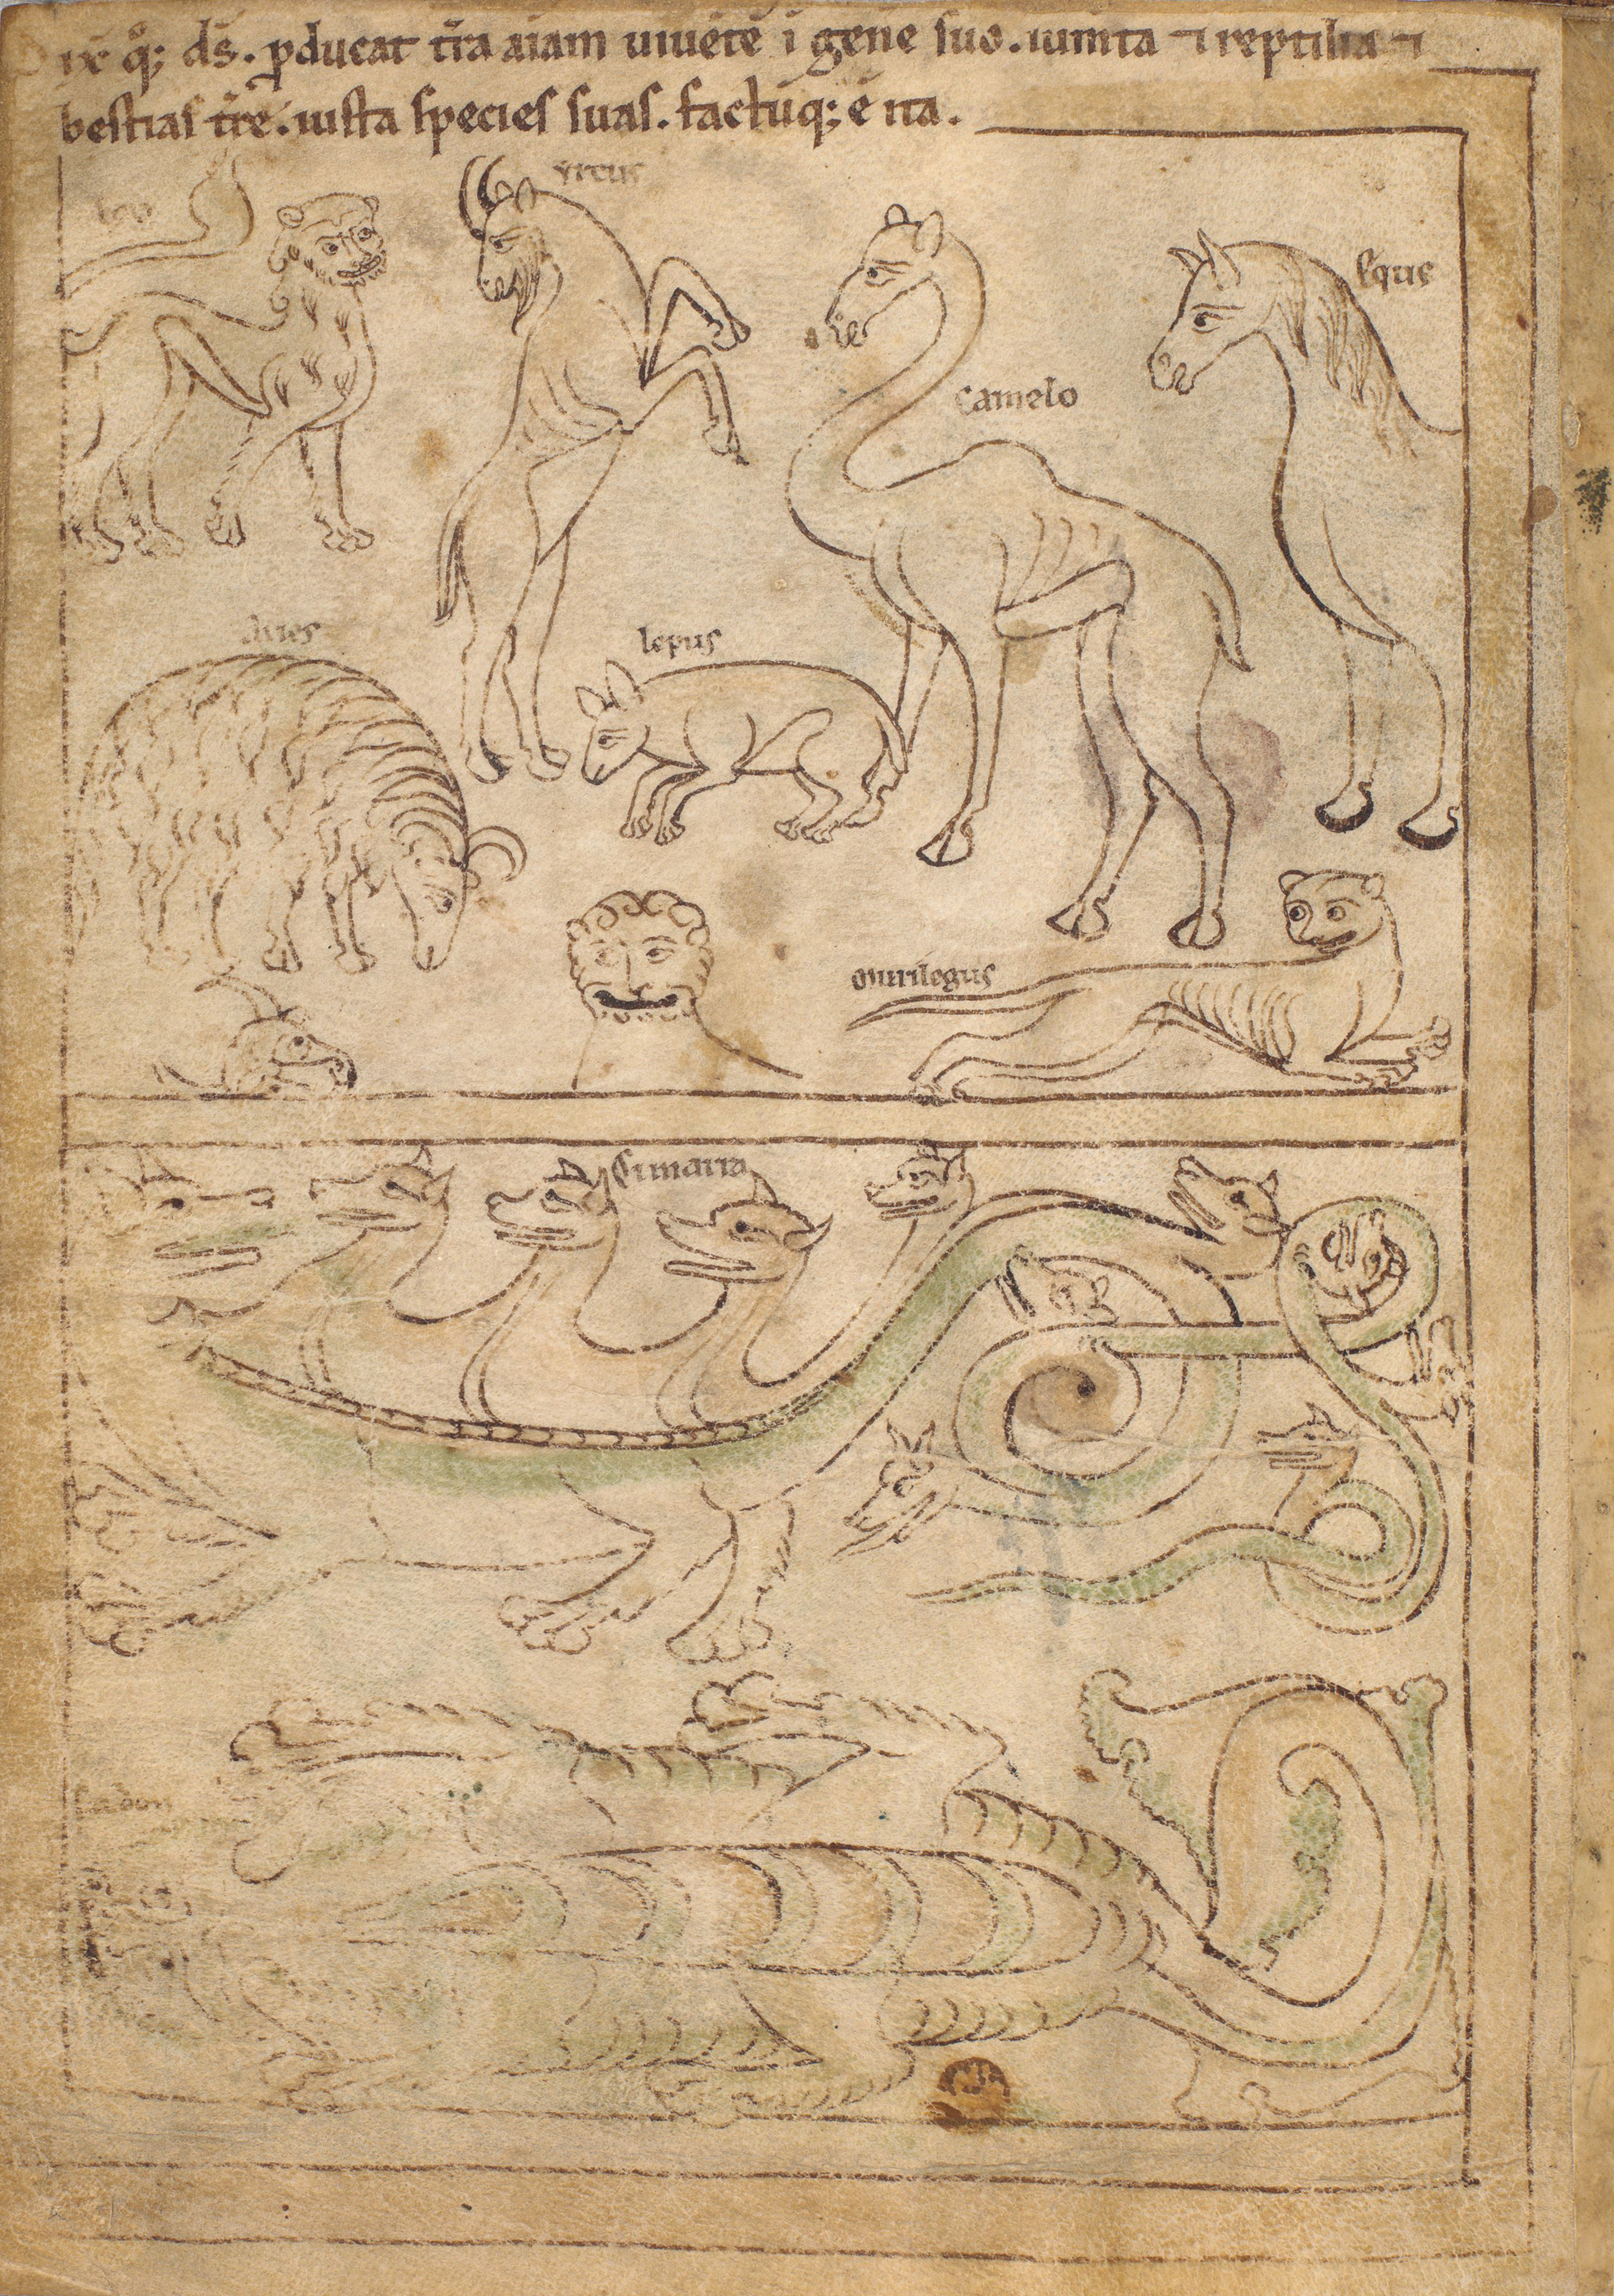 Seconde Bible de Pampelune, folio 4v – Création des animaux terrestres, les bêtes sauvages et les animaux domestiques (Gn 1, 24-25).